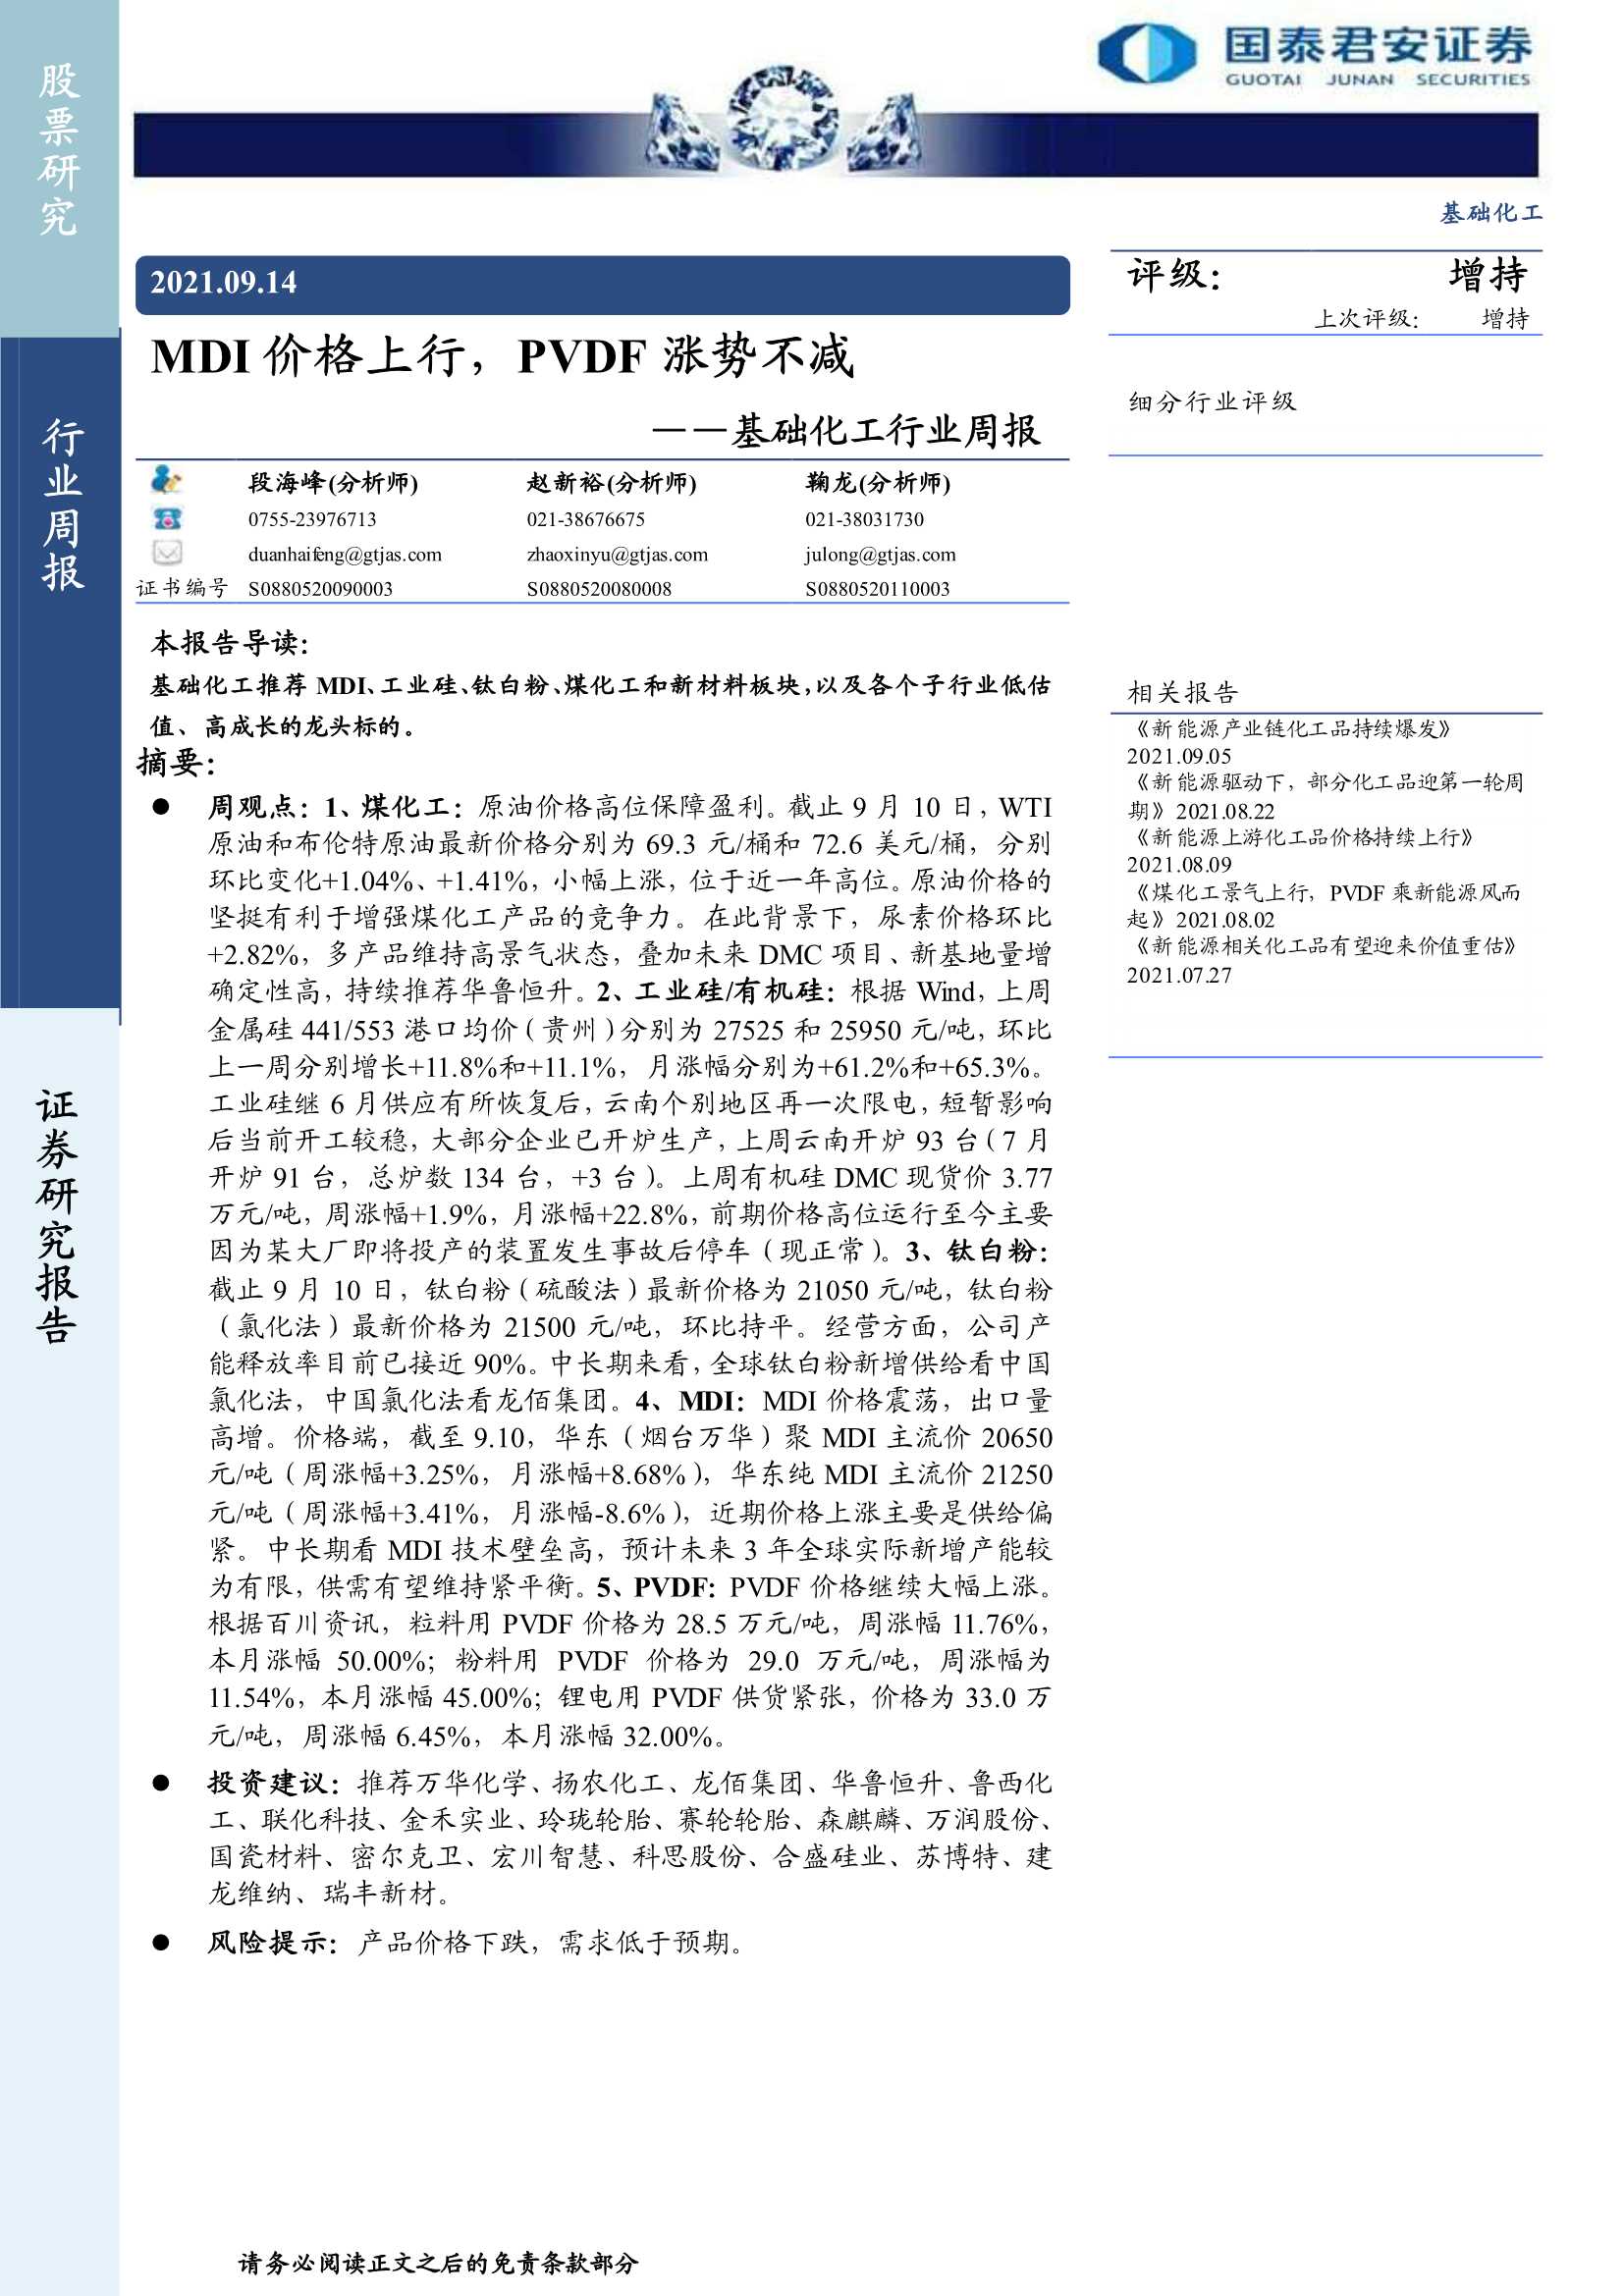 国泰君安-基础化工行业周报：MDI价格上行，PVDF涨势不减-20210914-21页